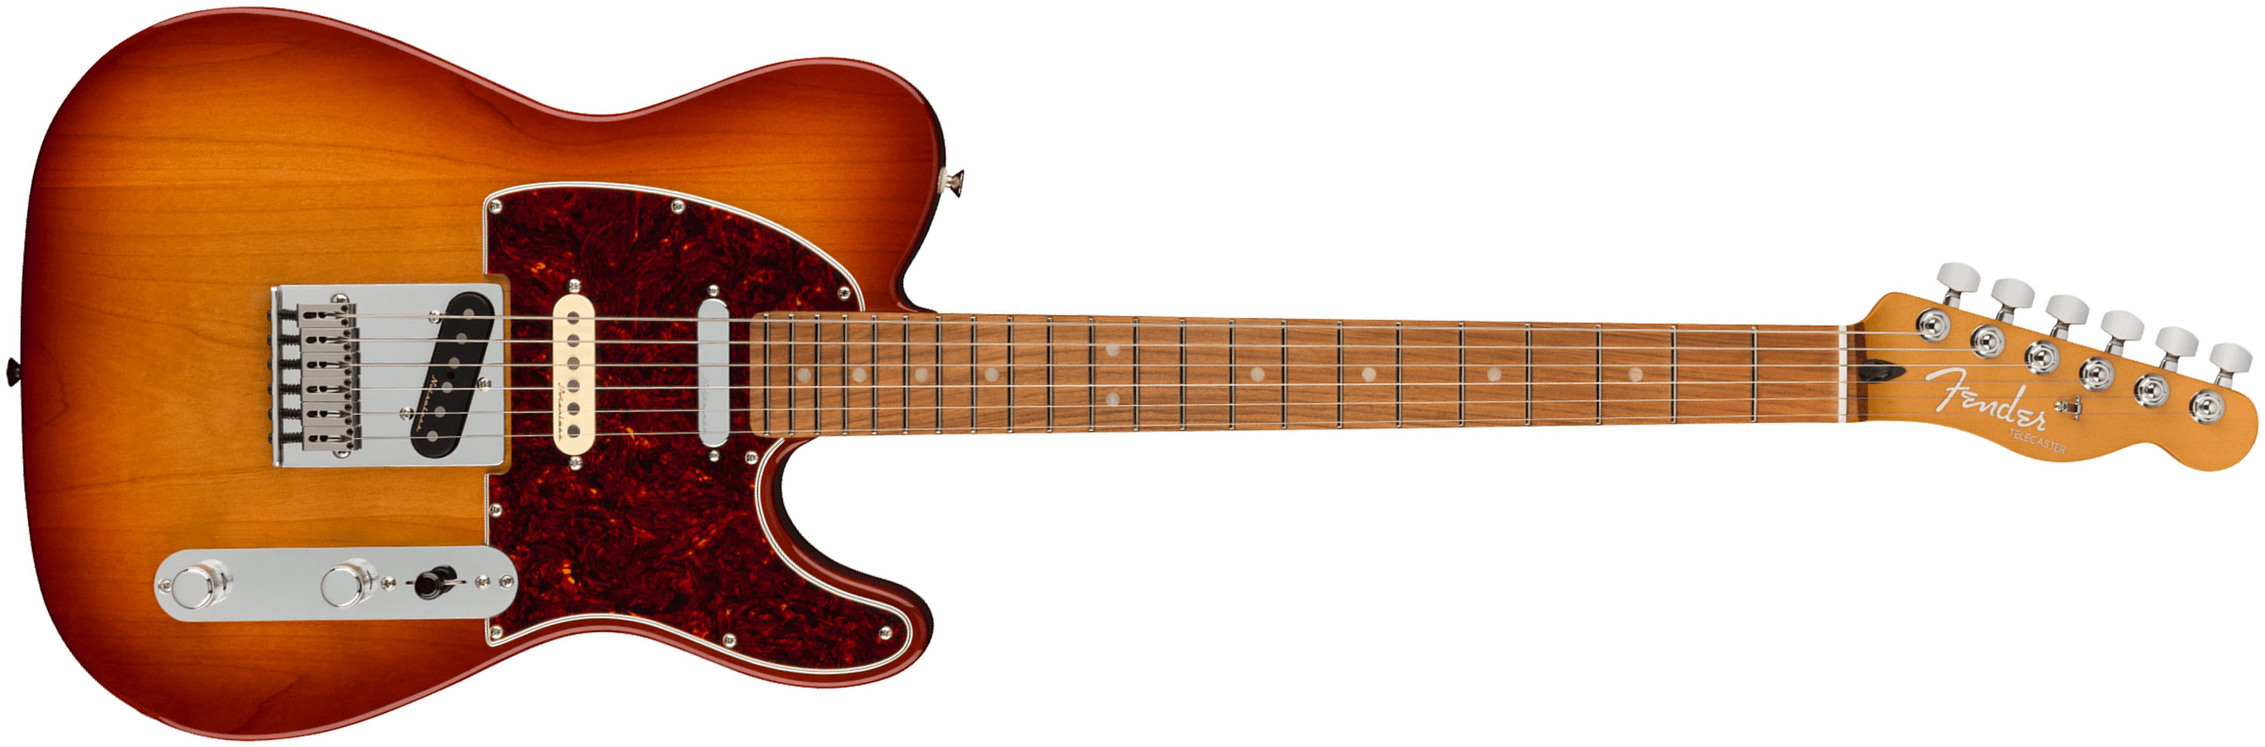 Fender Tele Player Plus Nashville Mex 2023 2s Ht Pf - Sienna Sunburst - Guitarra eléctrica con forma de tel - Main picture